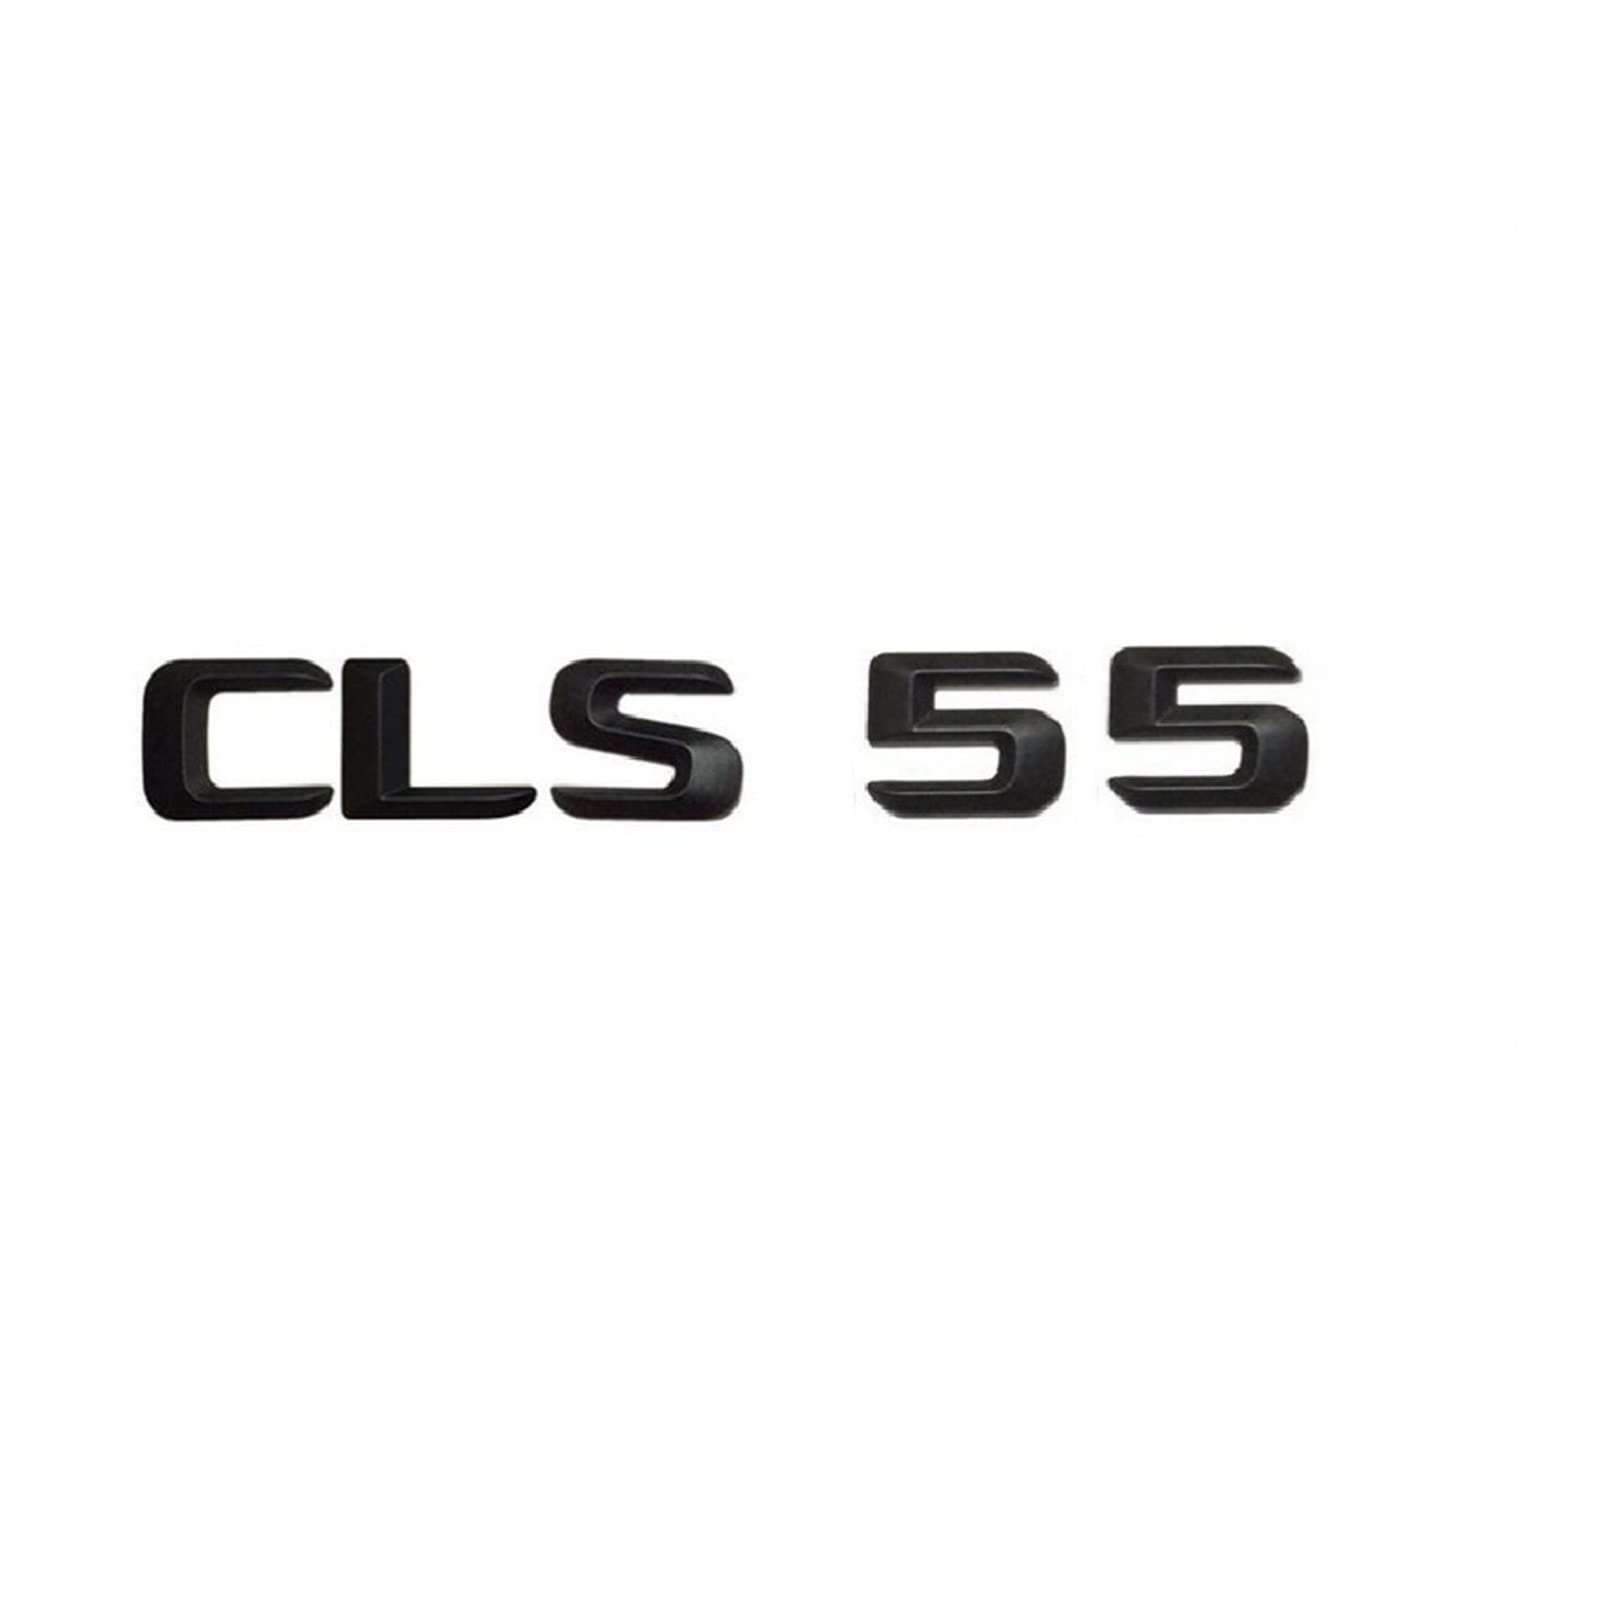 LHYFAGQK Mattschwarz CLS 55" Kofferraum-hintere Buchstaben, Wörter, Zahlen, Abzeichen, Emblem, Aufkleber, kompatibel mit Mercedes Benz CLS-Klasse CLS55 AMG Abzeichen Autoaufkleber von LHYFAGQK